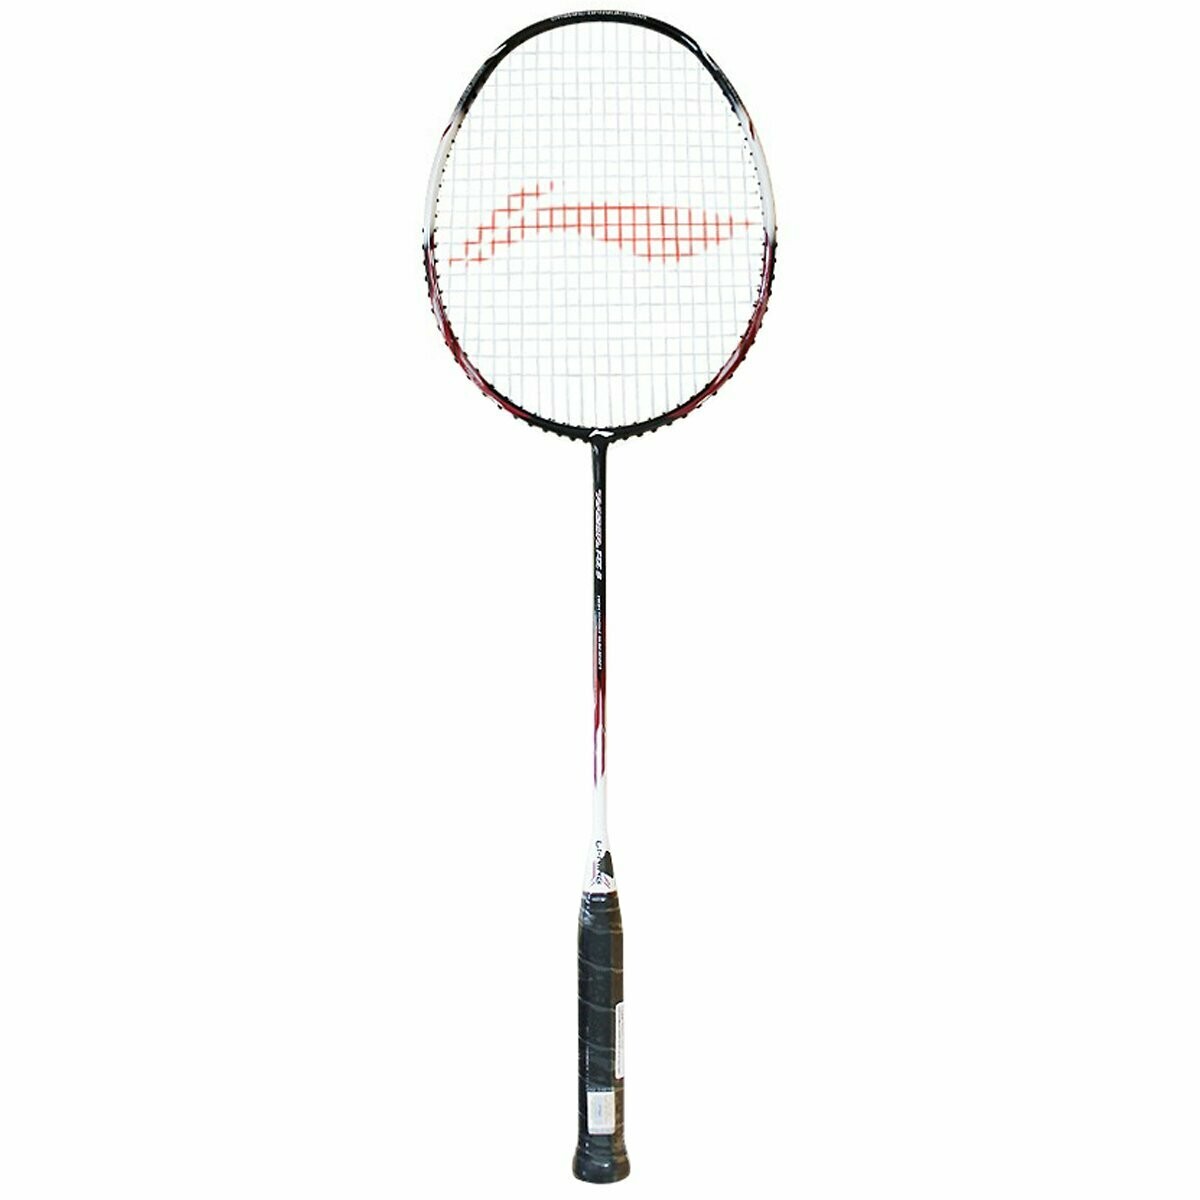 LI-NING Razor RZ-3 Badminton Racquet